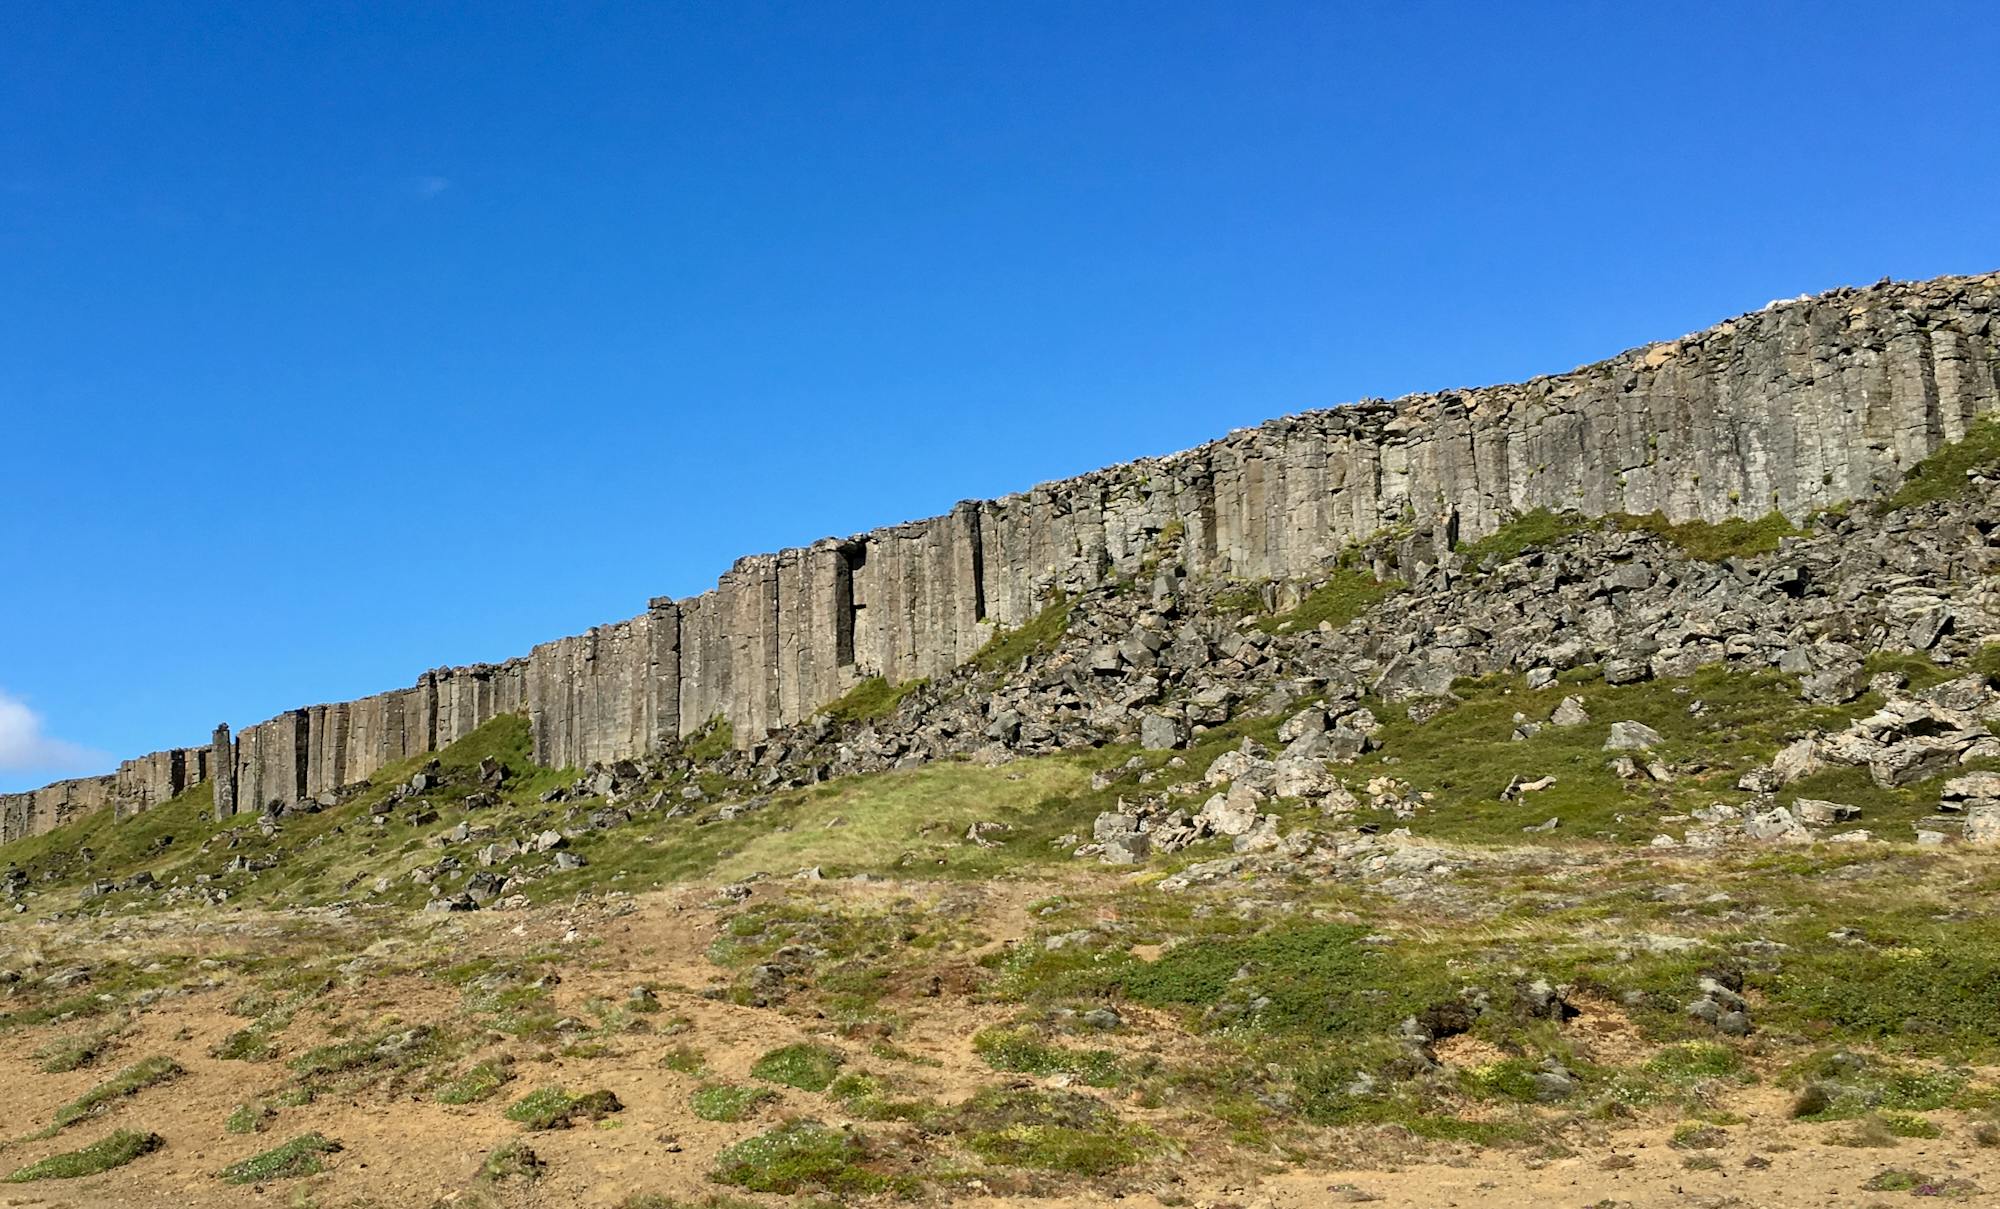 A wall of basalt columns